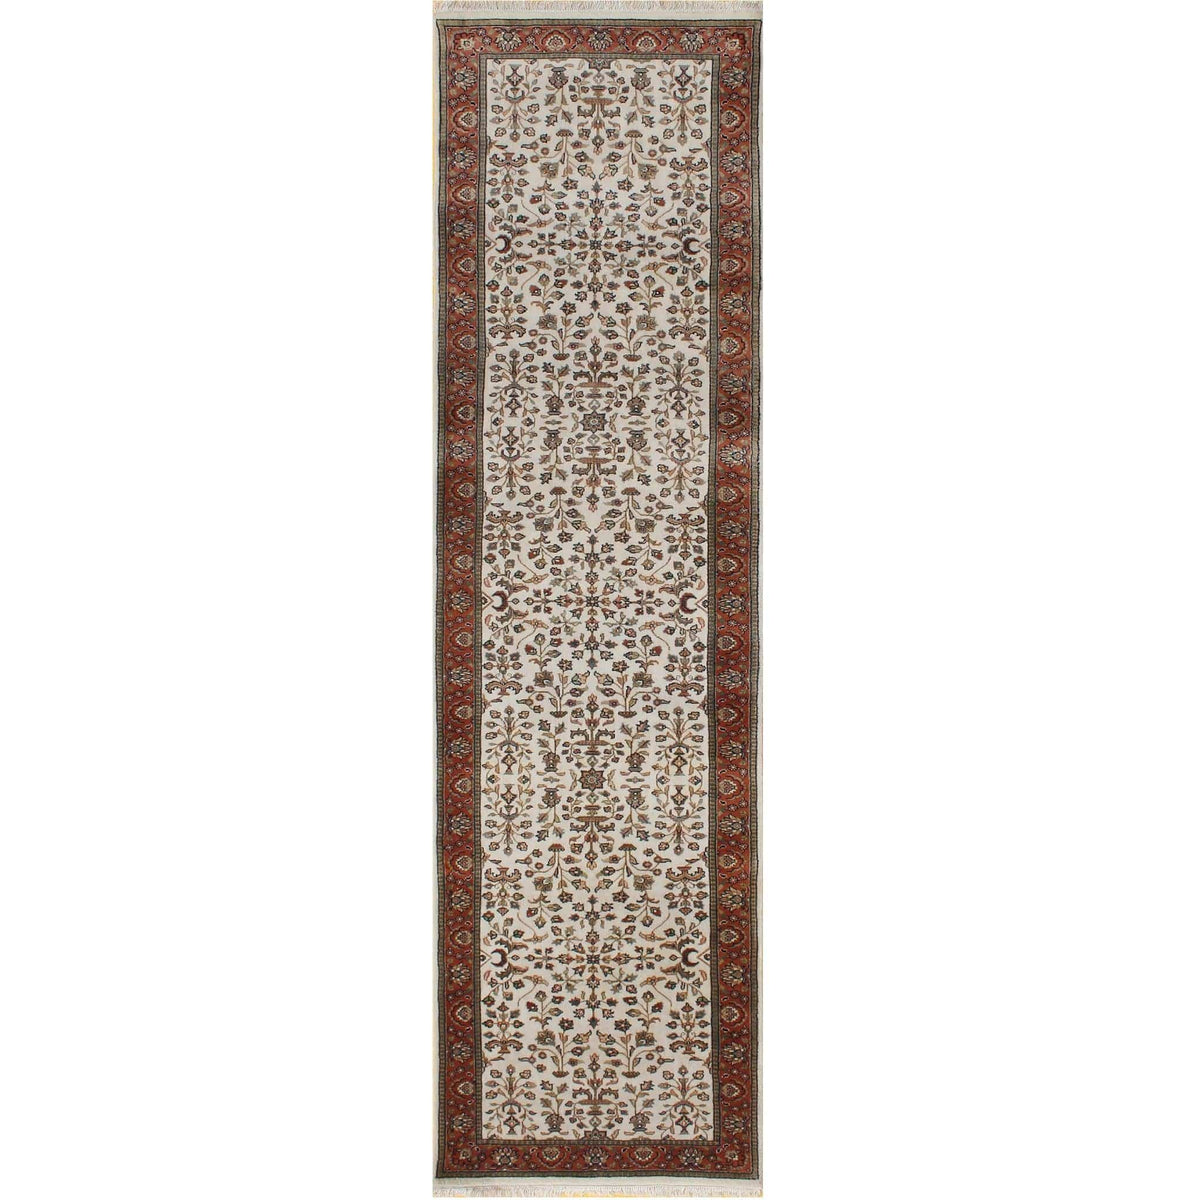 Fine Hand-knotted Wool Saruk Design Hallway Runner 81cm x 304cm